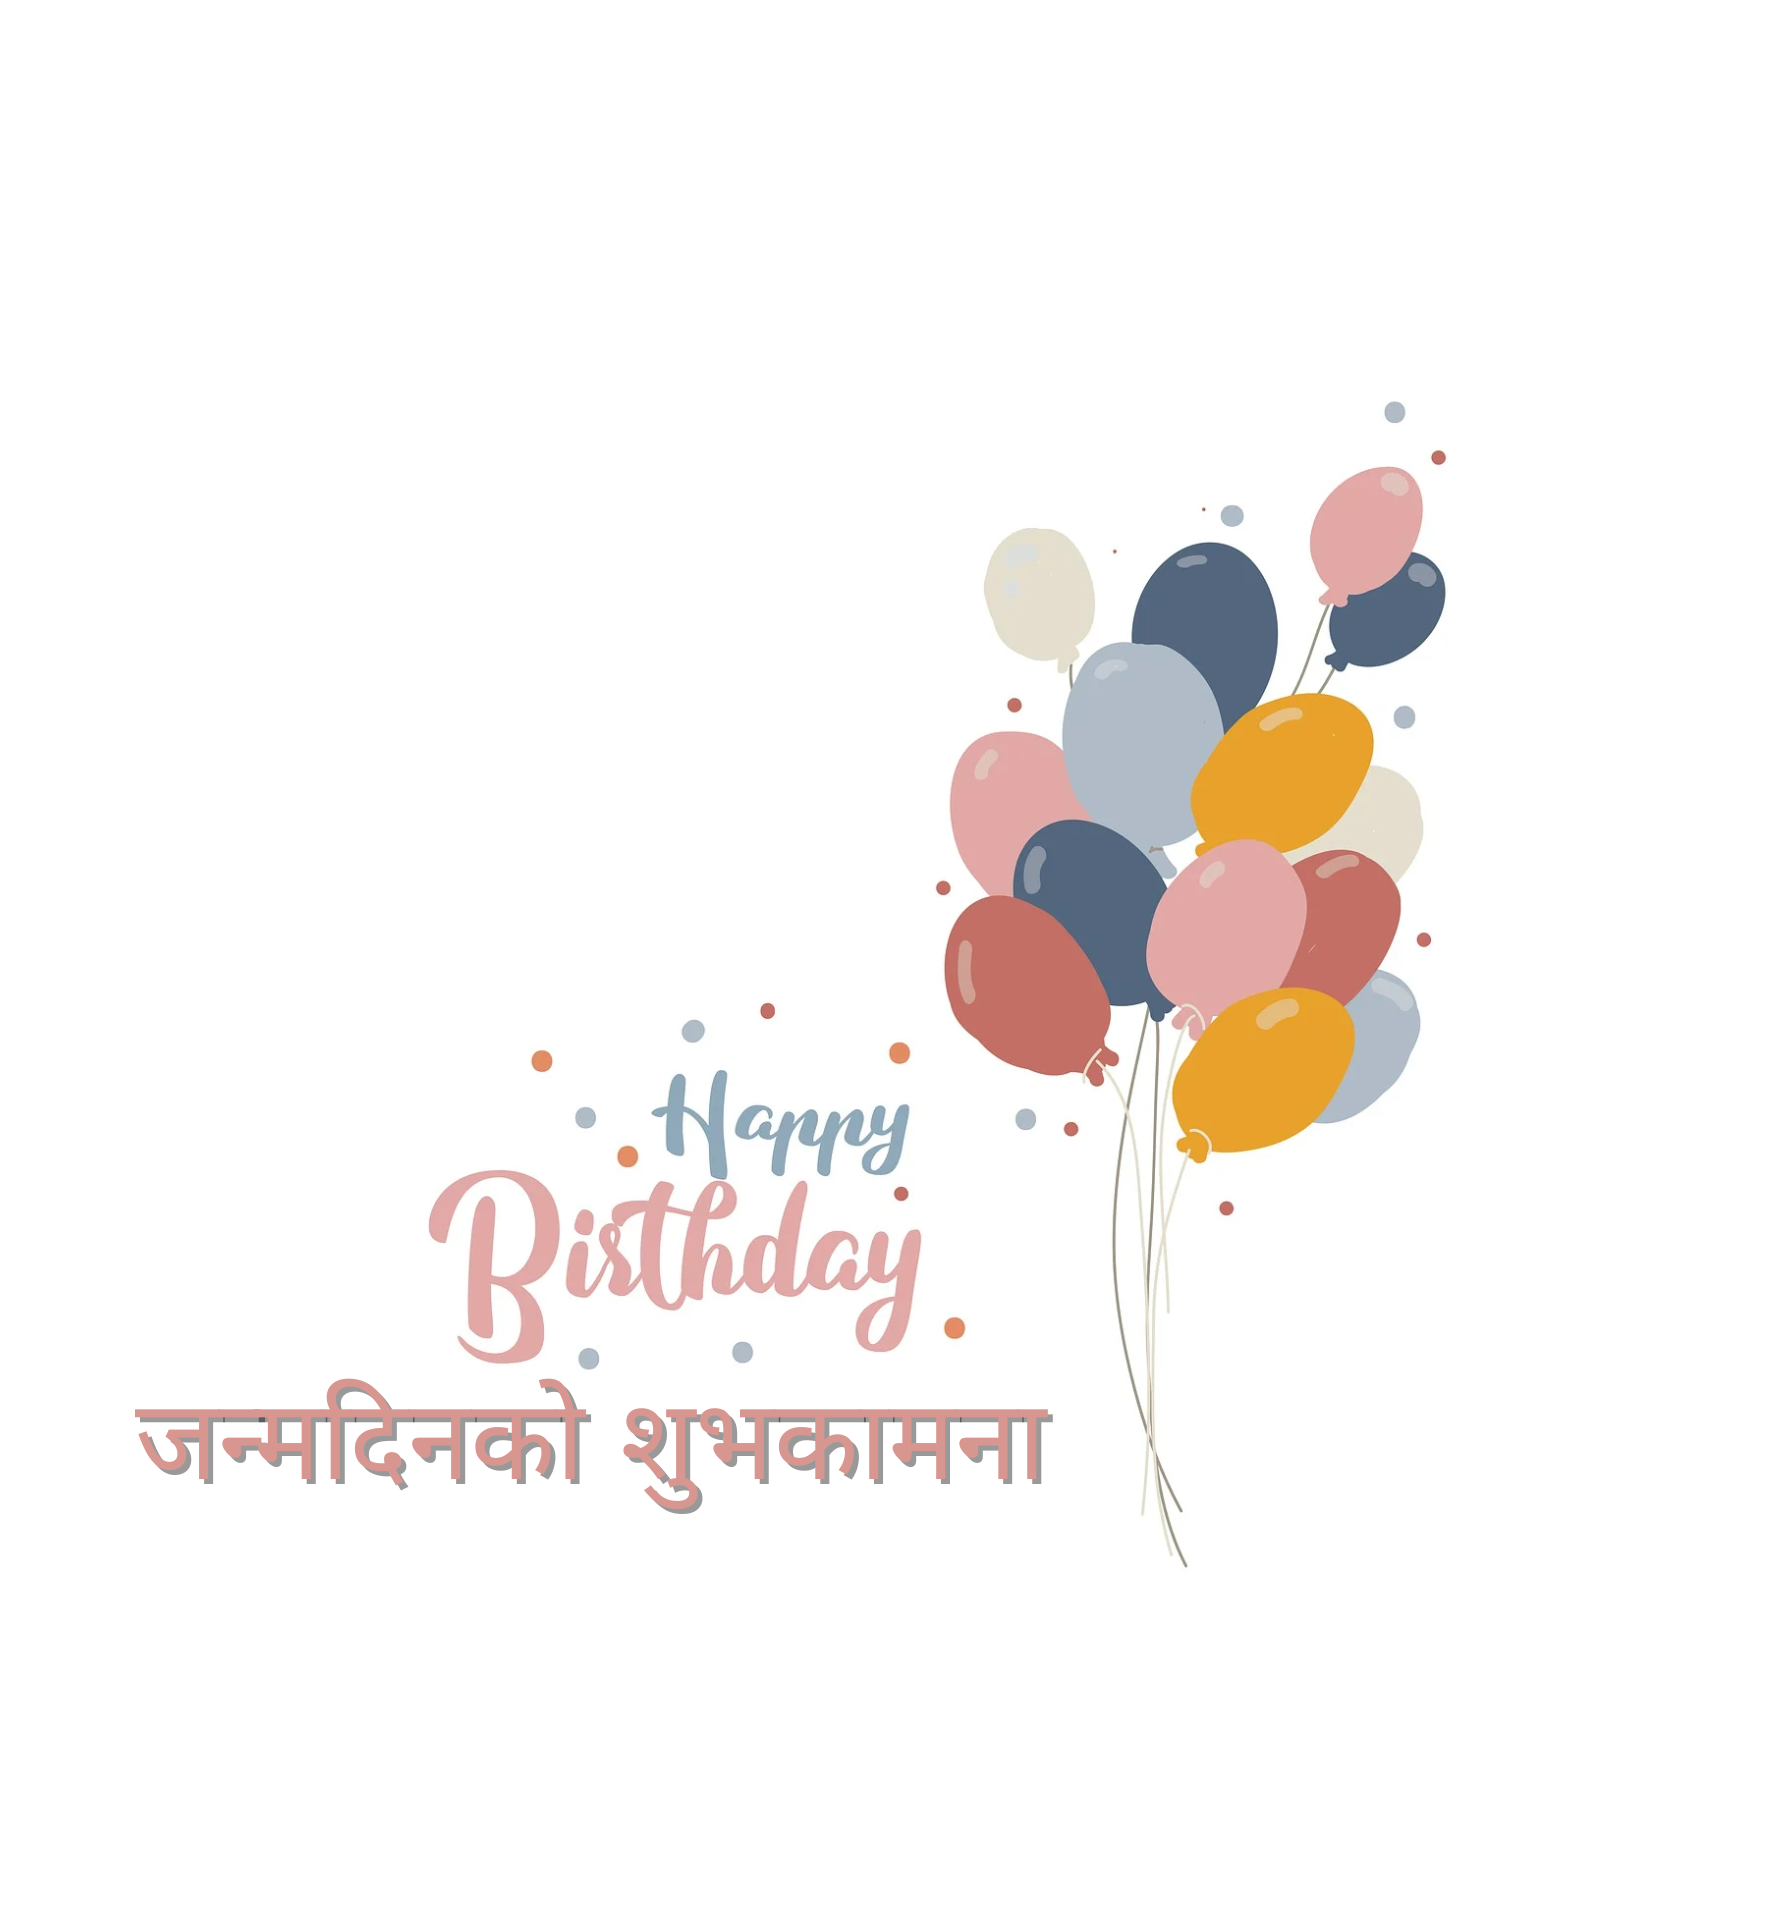 Nepali Birthday Wishes Images – Janmadin Ko Subhakamana